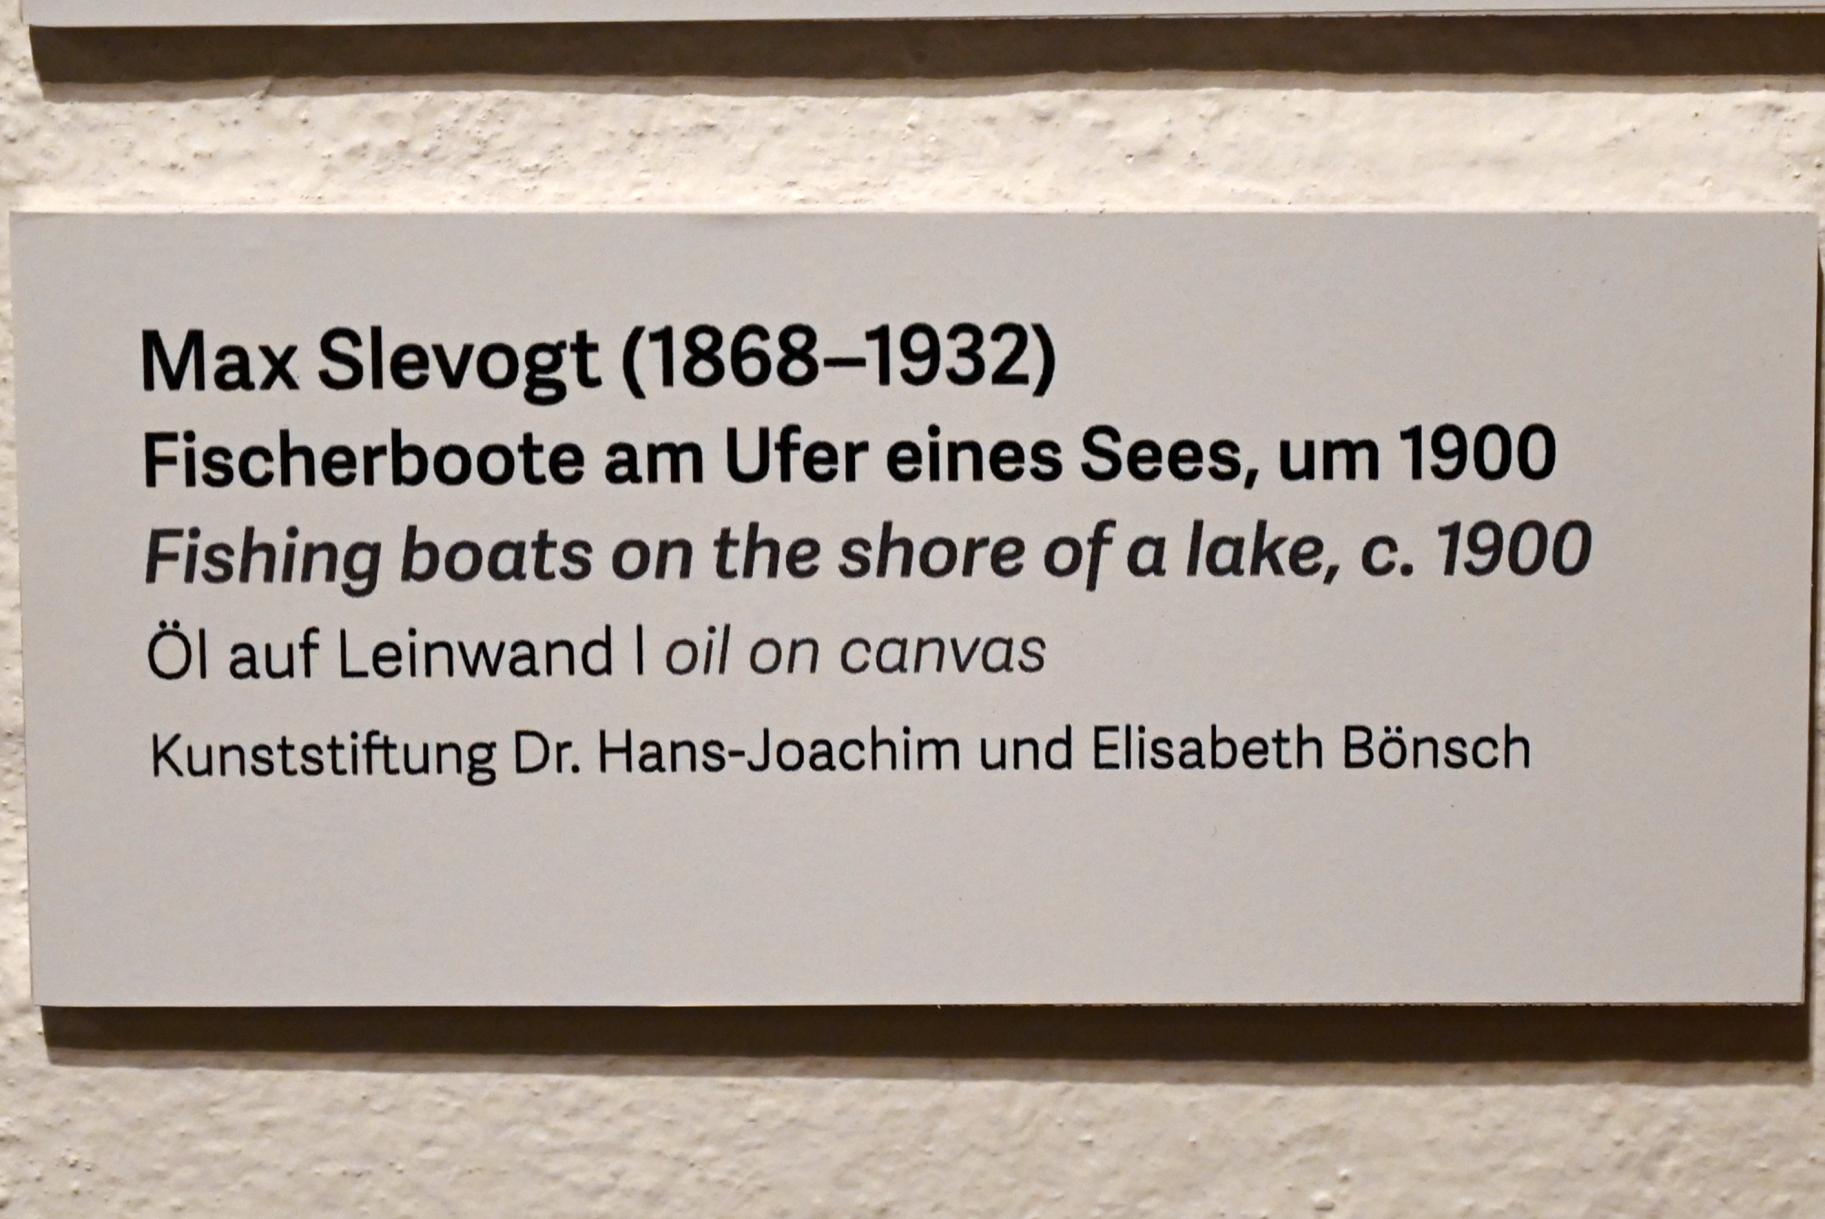 Max Slevogt (1886–1931), Fischerboote am Ufer eines Sees, Schleswig, Landesmuseum für Kunst und Kulturgeschichte, Kunst im 20. Jh., um 1900, Bild 2/2